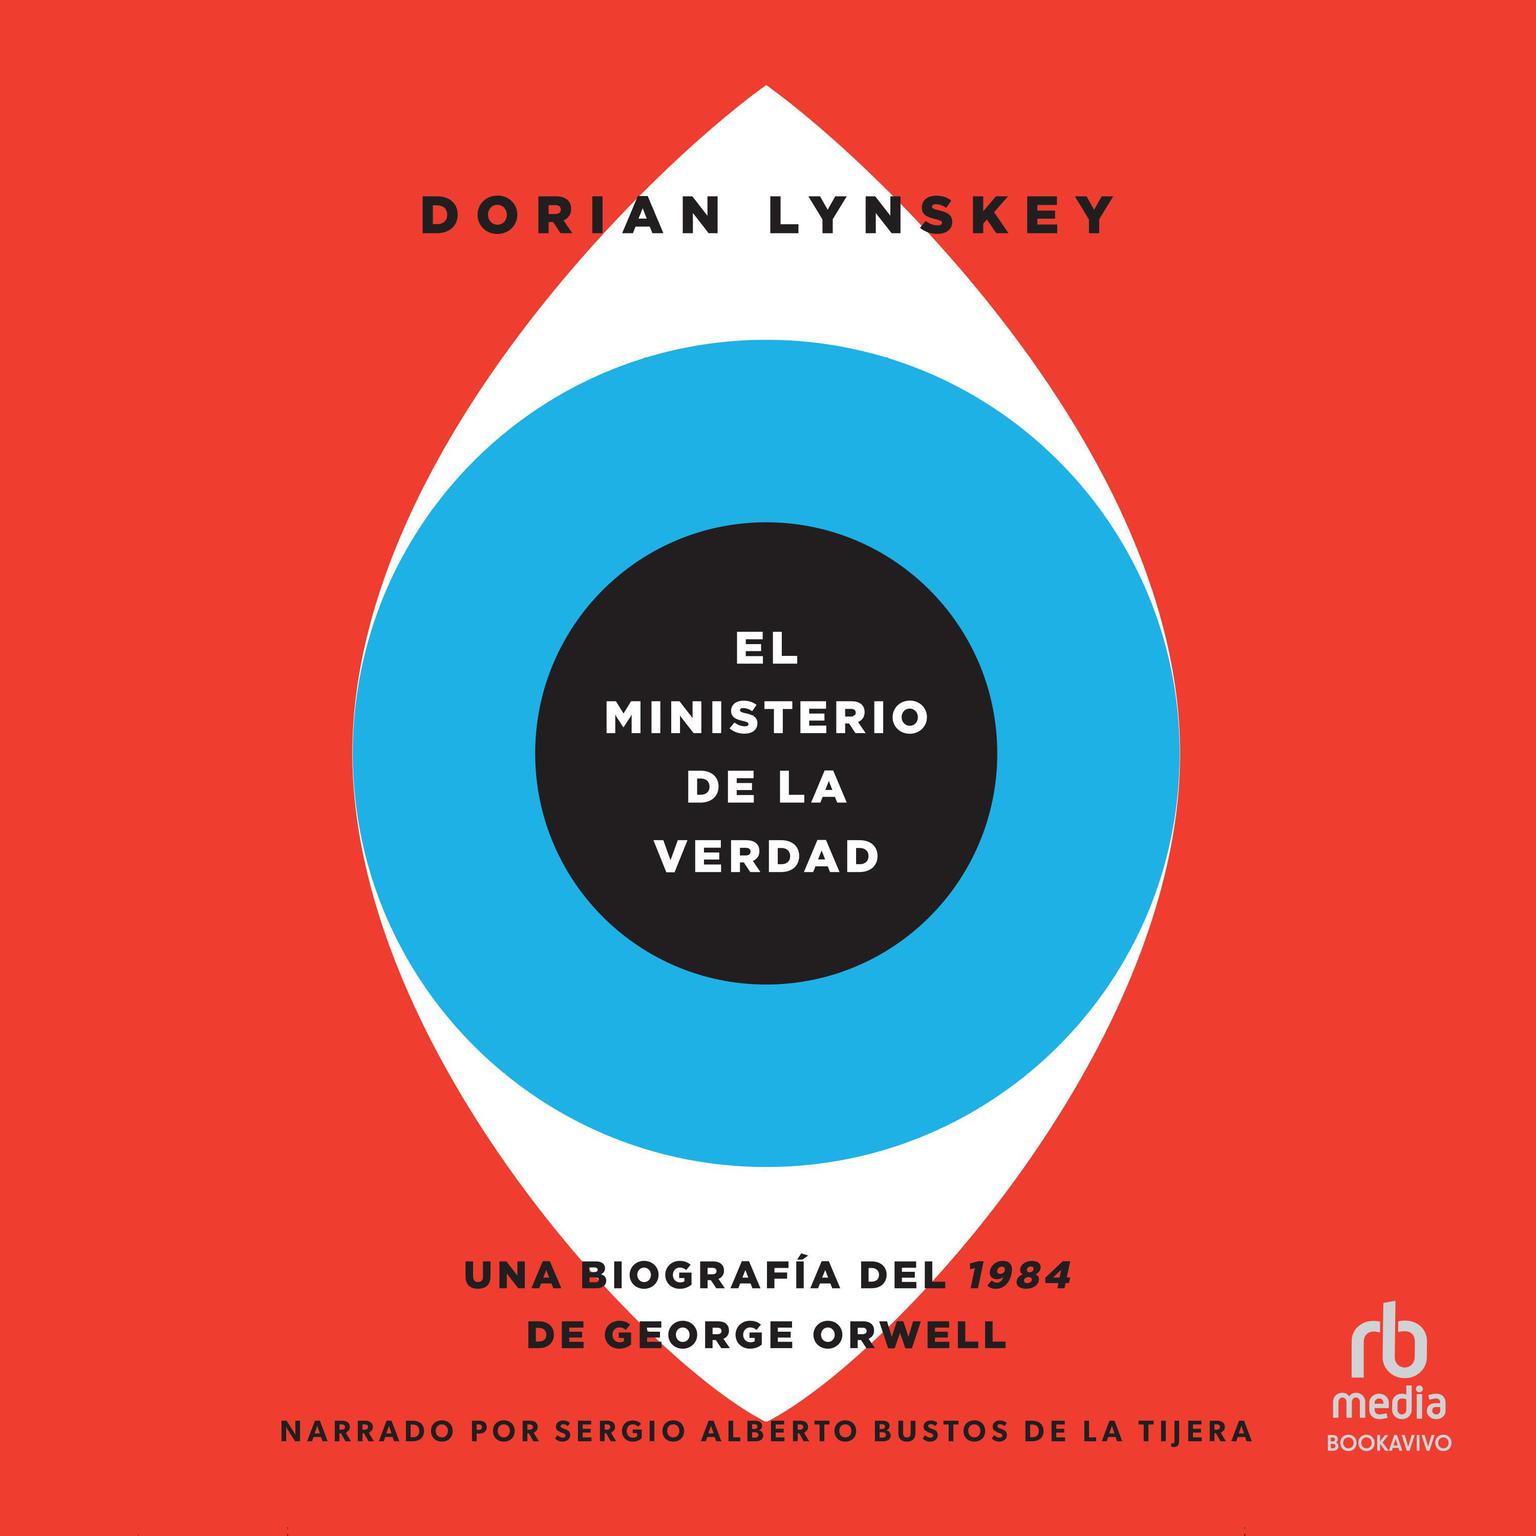 El Ministerio de la Verdad (The Ministry of Truth): Una biografía del 1984 de George Orwell (The Biography of George Orwells 1984) Audiobook, by Dorian Lynskey